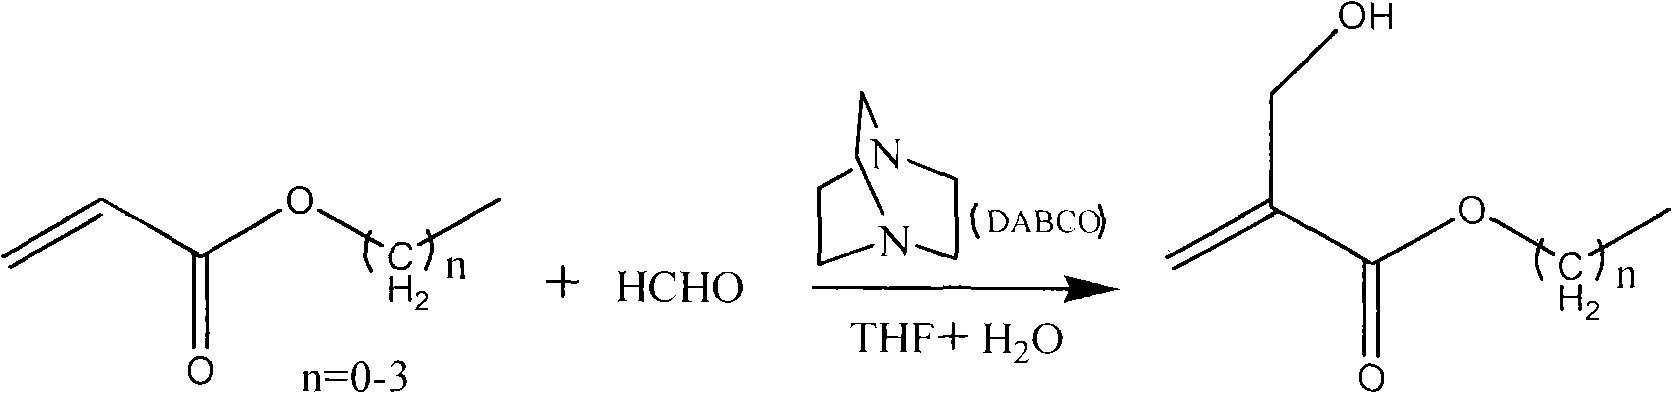 Method for synthesizing 2-hydroxymethyl acrylate compound